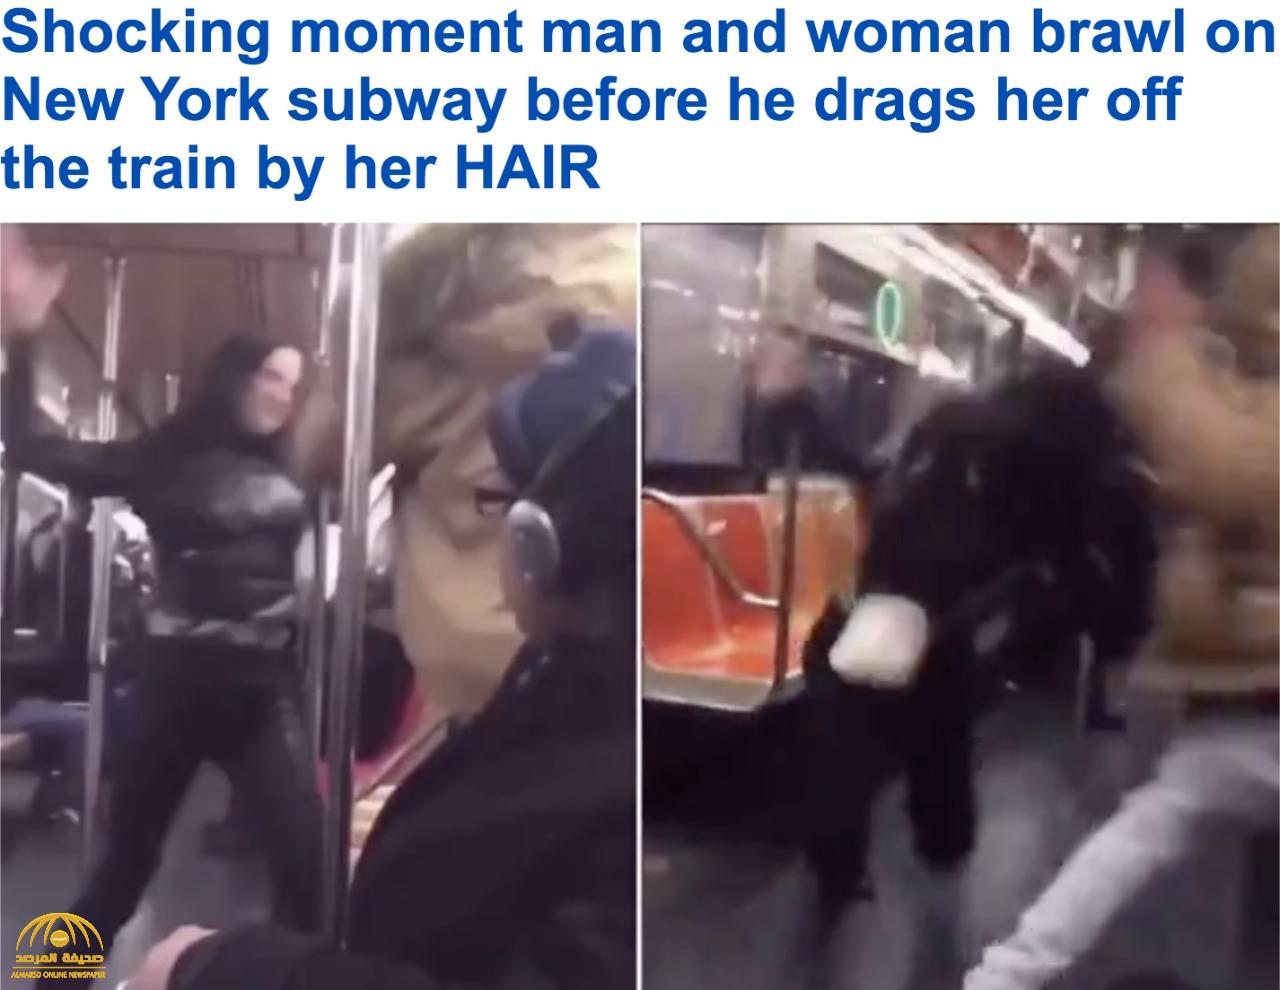 شاهد: عربة قطار في نيويورك تتحول لـ "حلبة مصارعة" بين رجل وامرأة.. والنهاية مؤلمة !